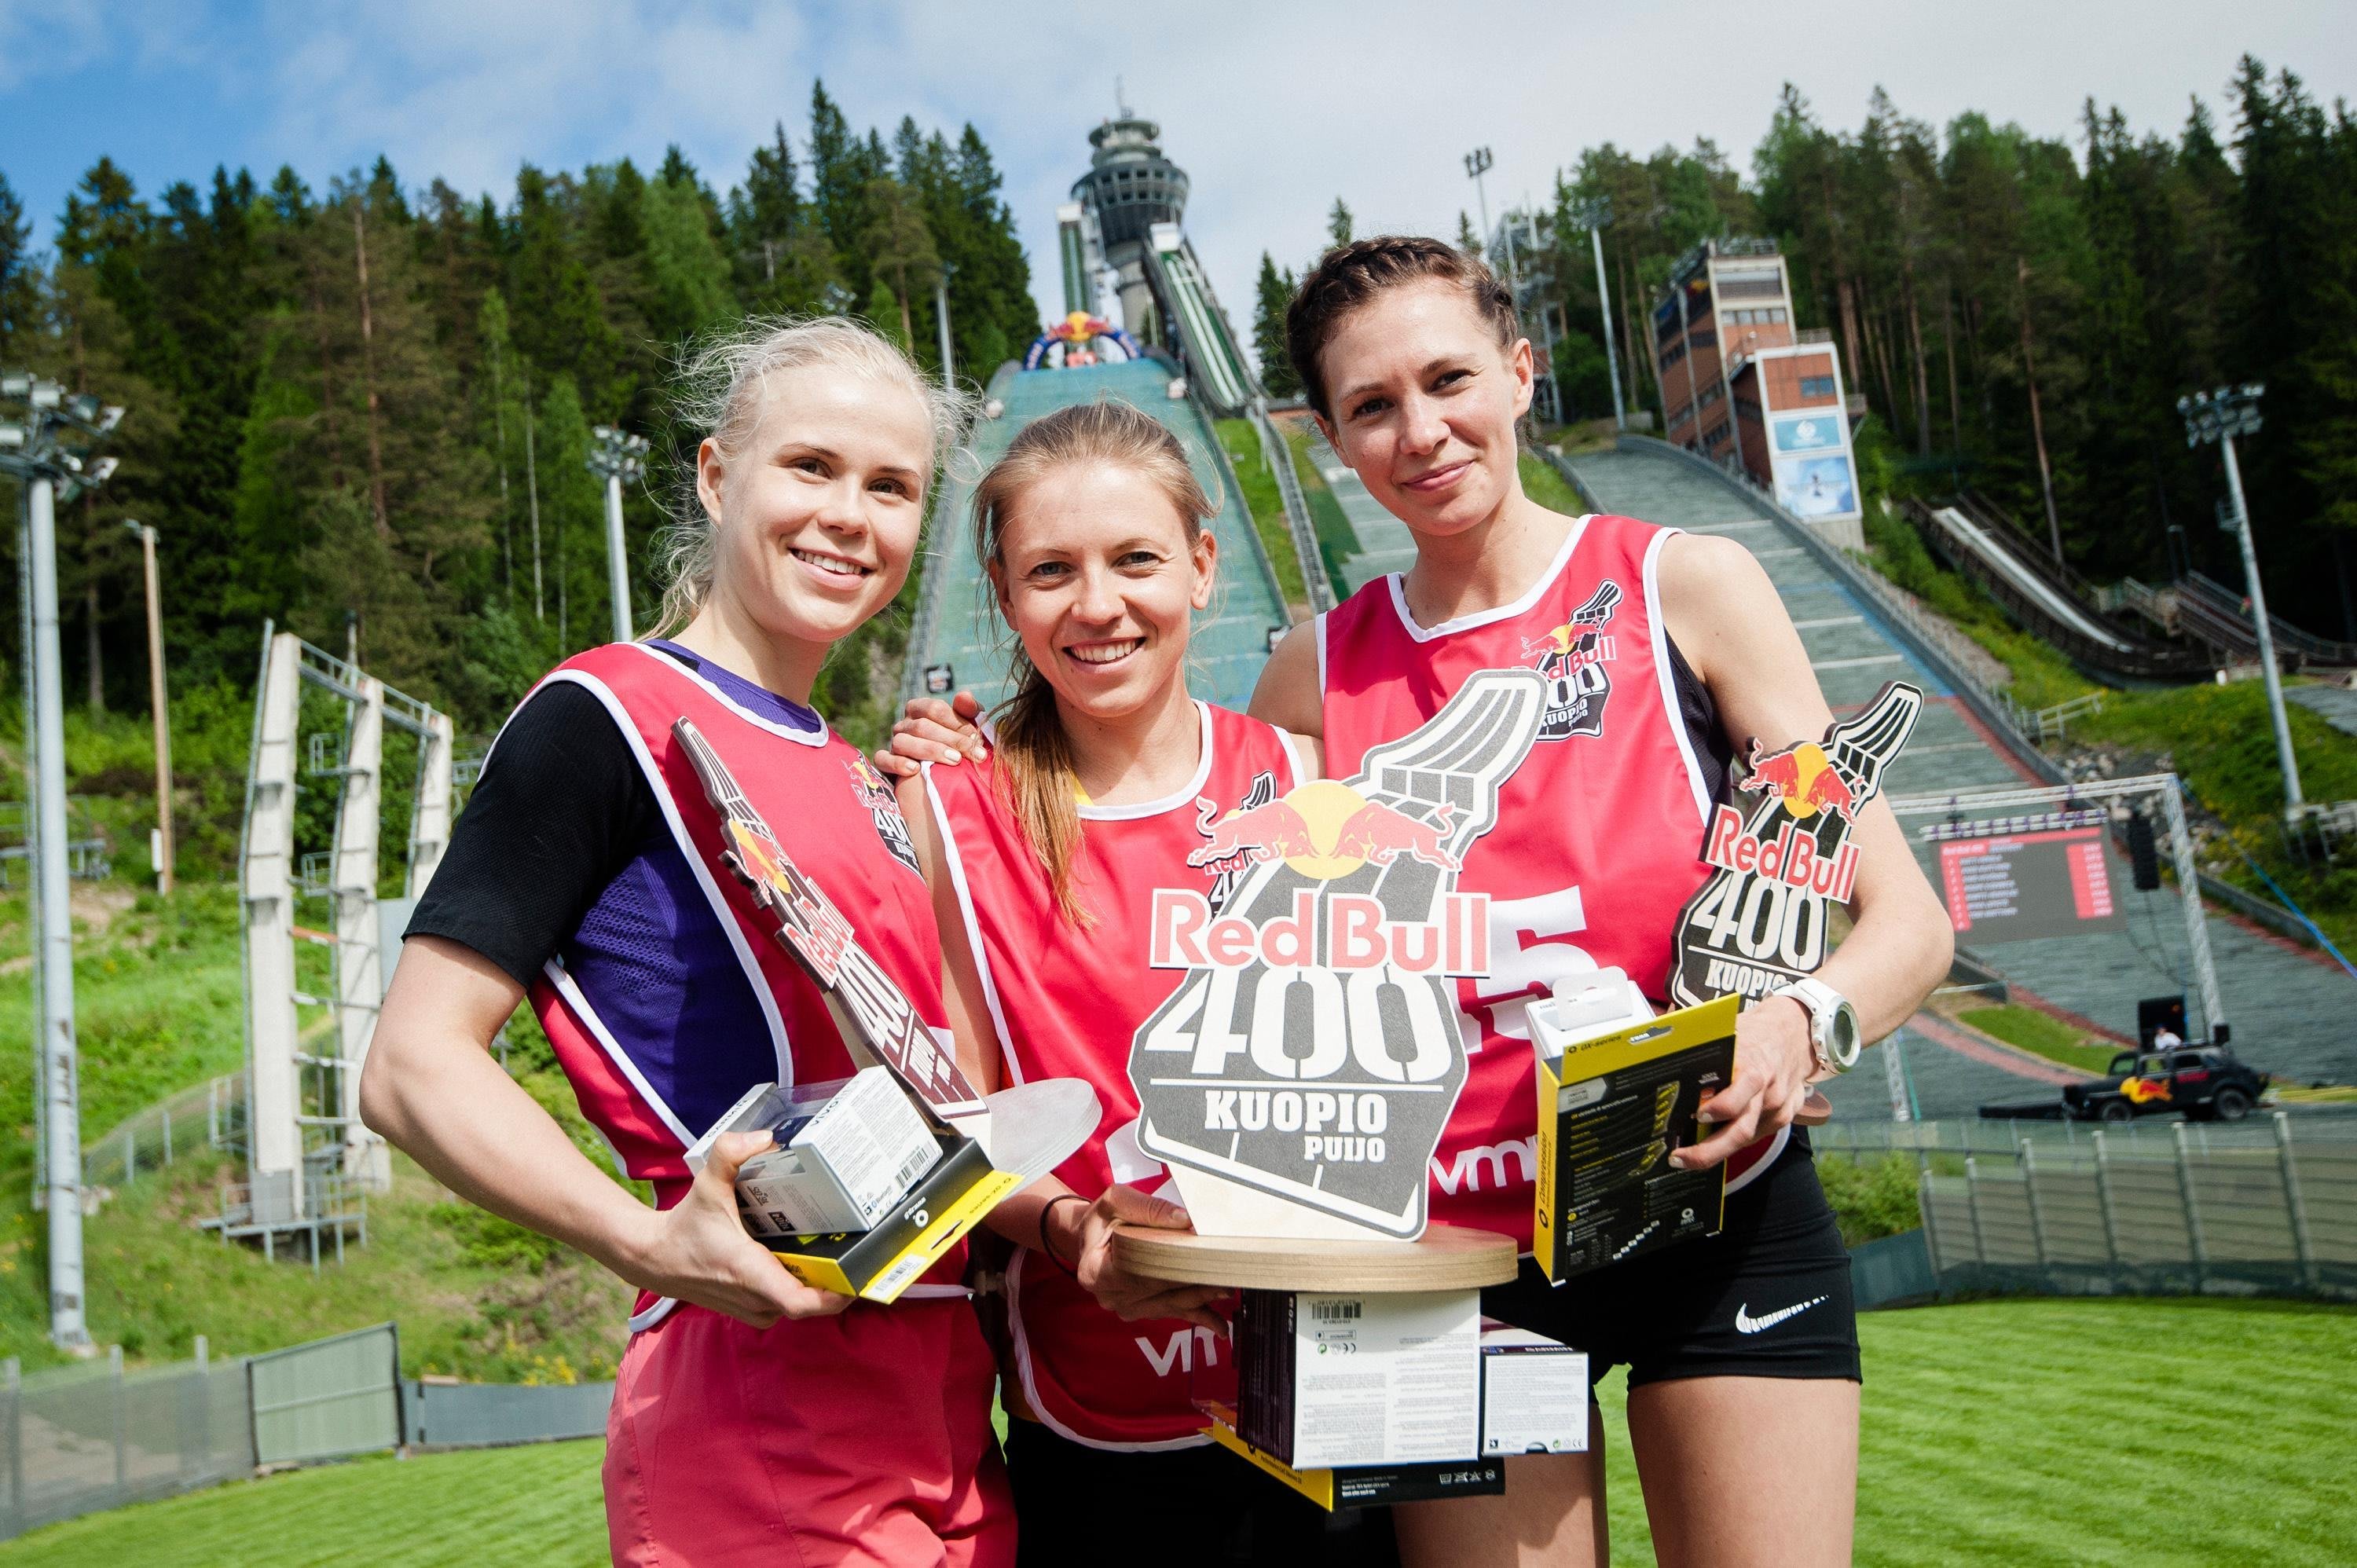 Red Bull 400: Kuopion kilpailun tulokset